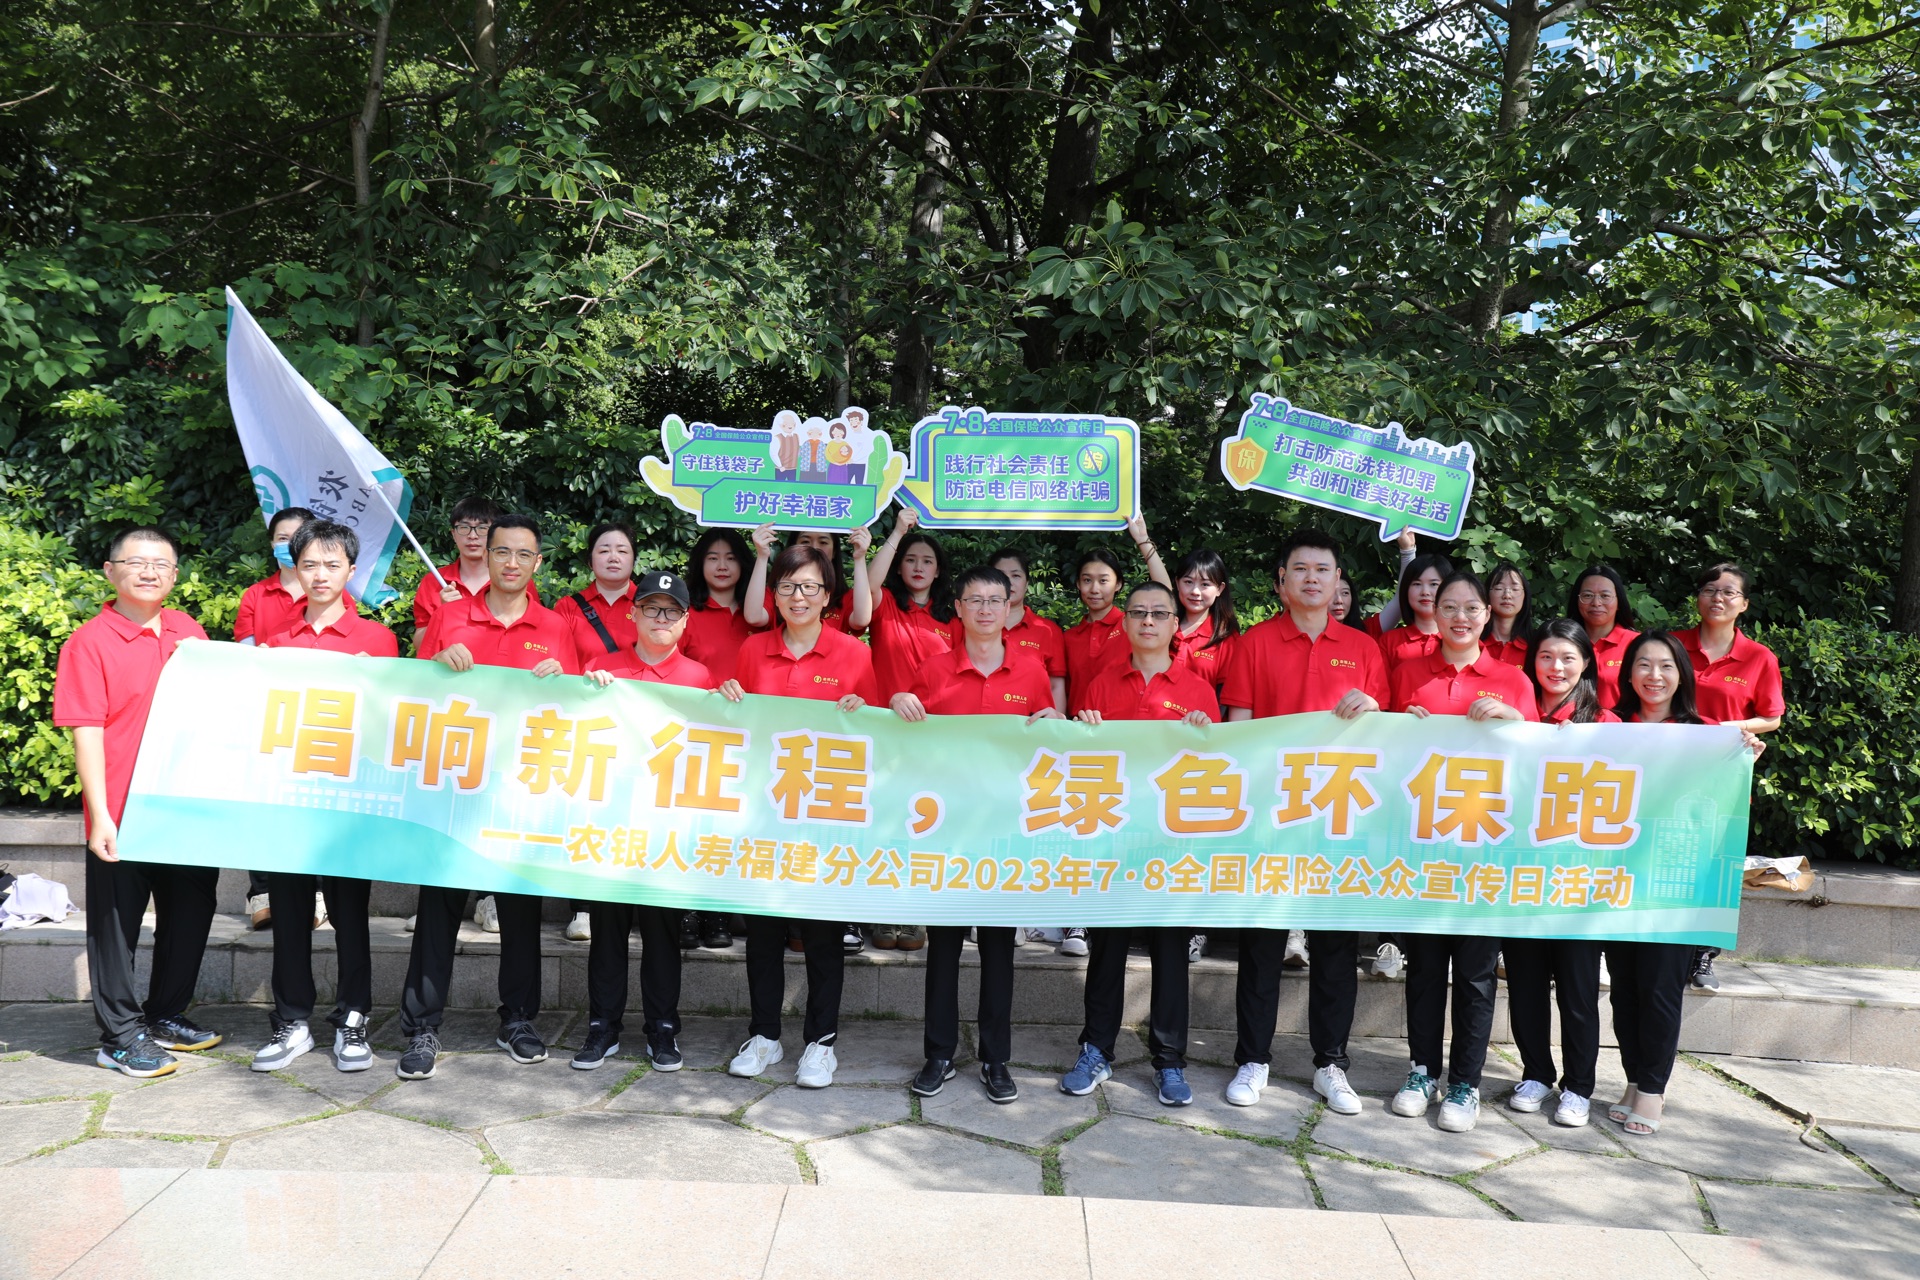 7月5日，分公司负责人郑海国带队前往福州市温泉公园开展“唱响新征程·绿色环保跑”线下公益健步走集体活动，用脚步重走长征路